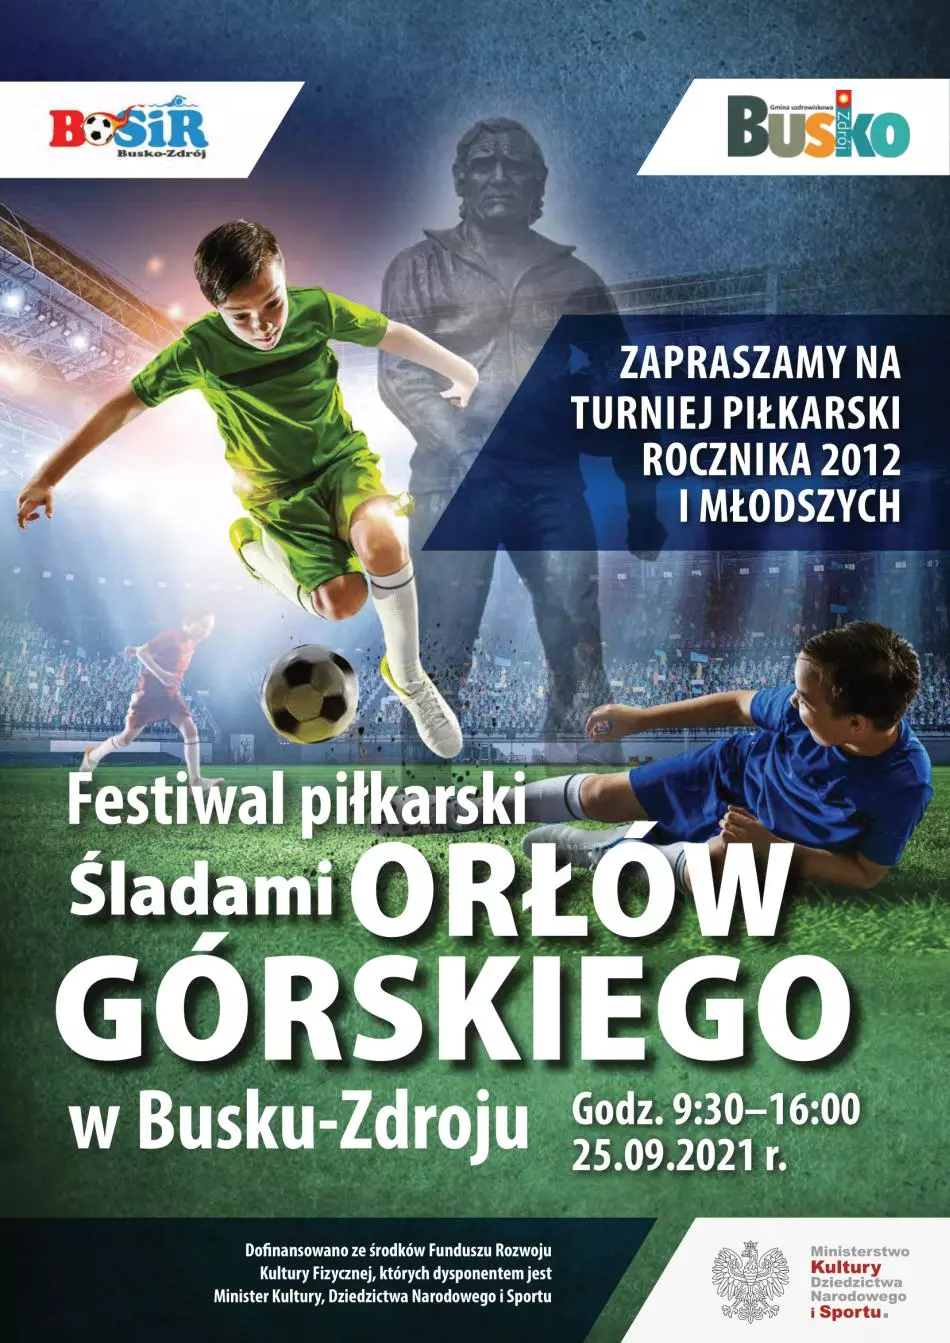 festiwalu piłkarskiego śladami Orłów Górskiego, który odbędzie się w dn. 25.09.2021 r. na Stadionie Miejskim